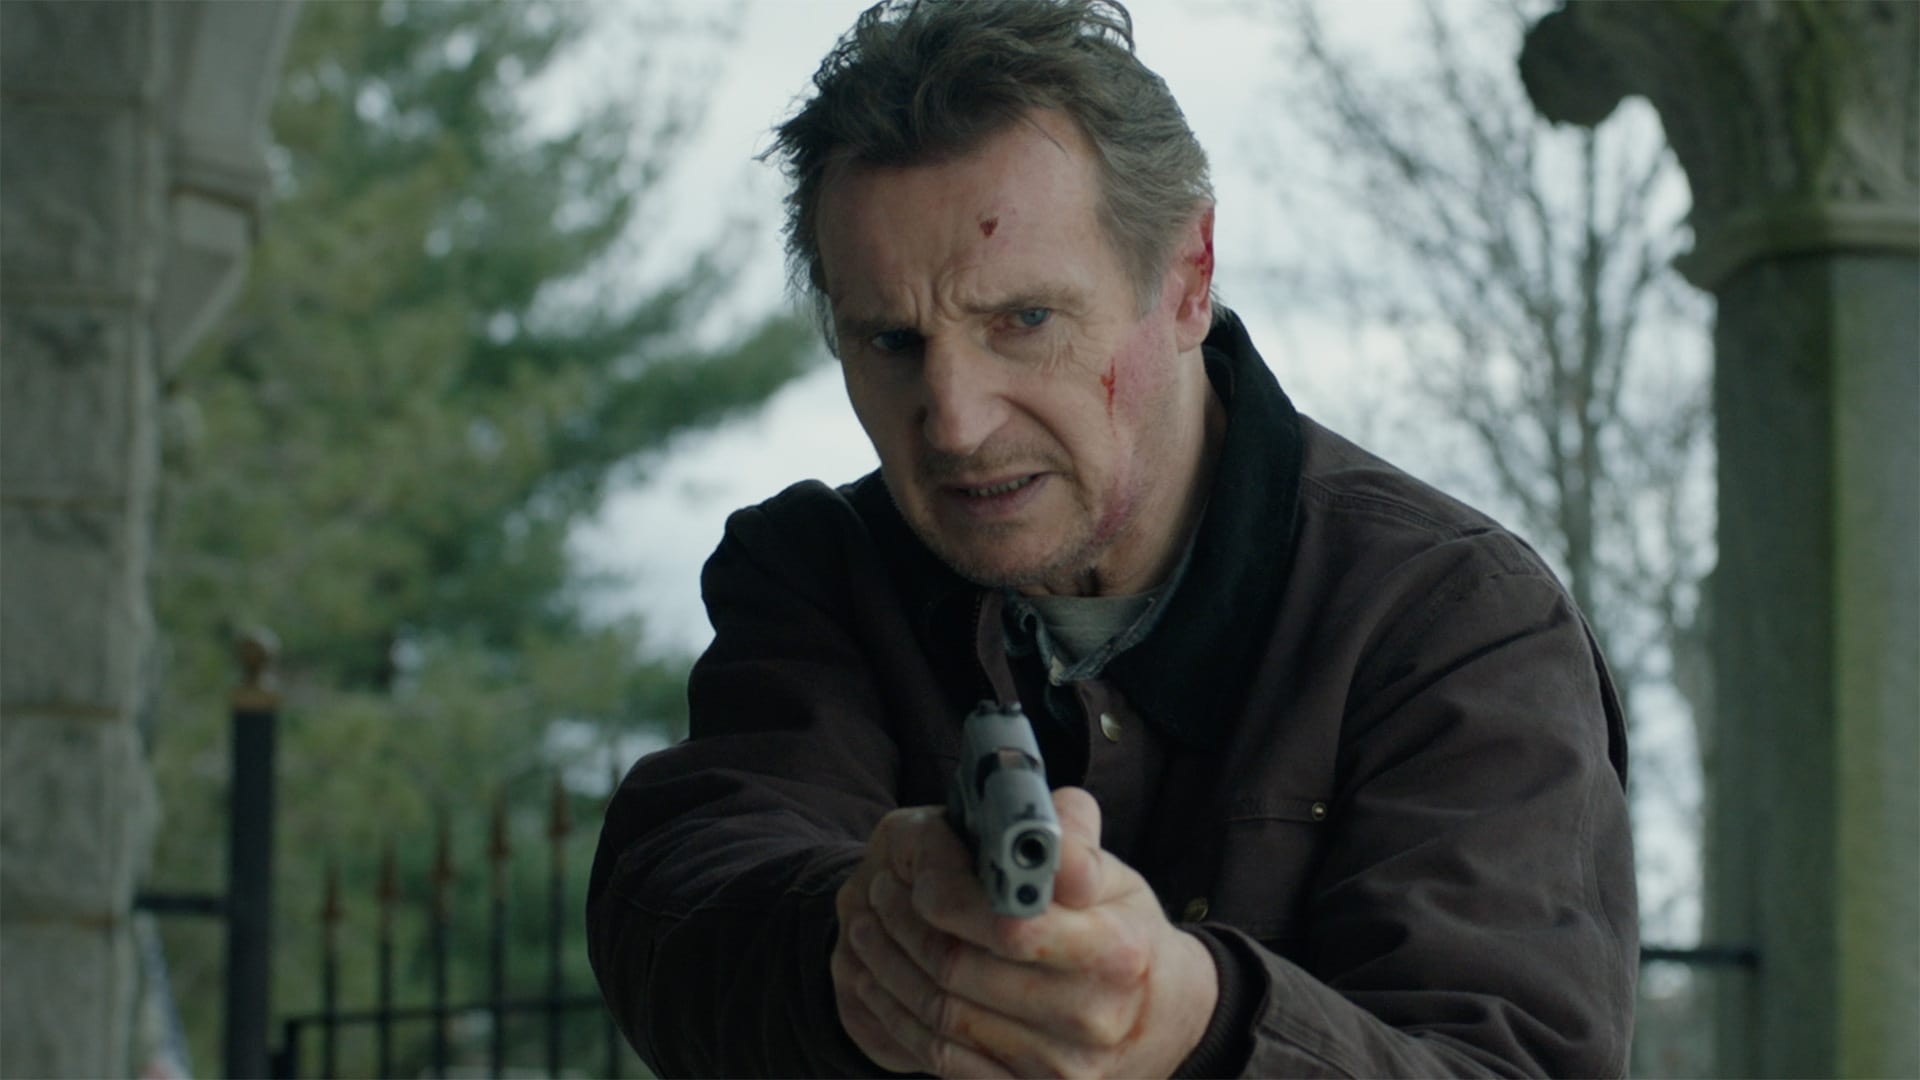 Tom Carter (Liam Neeson) - The Good Criminal